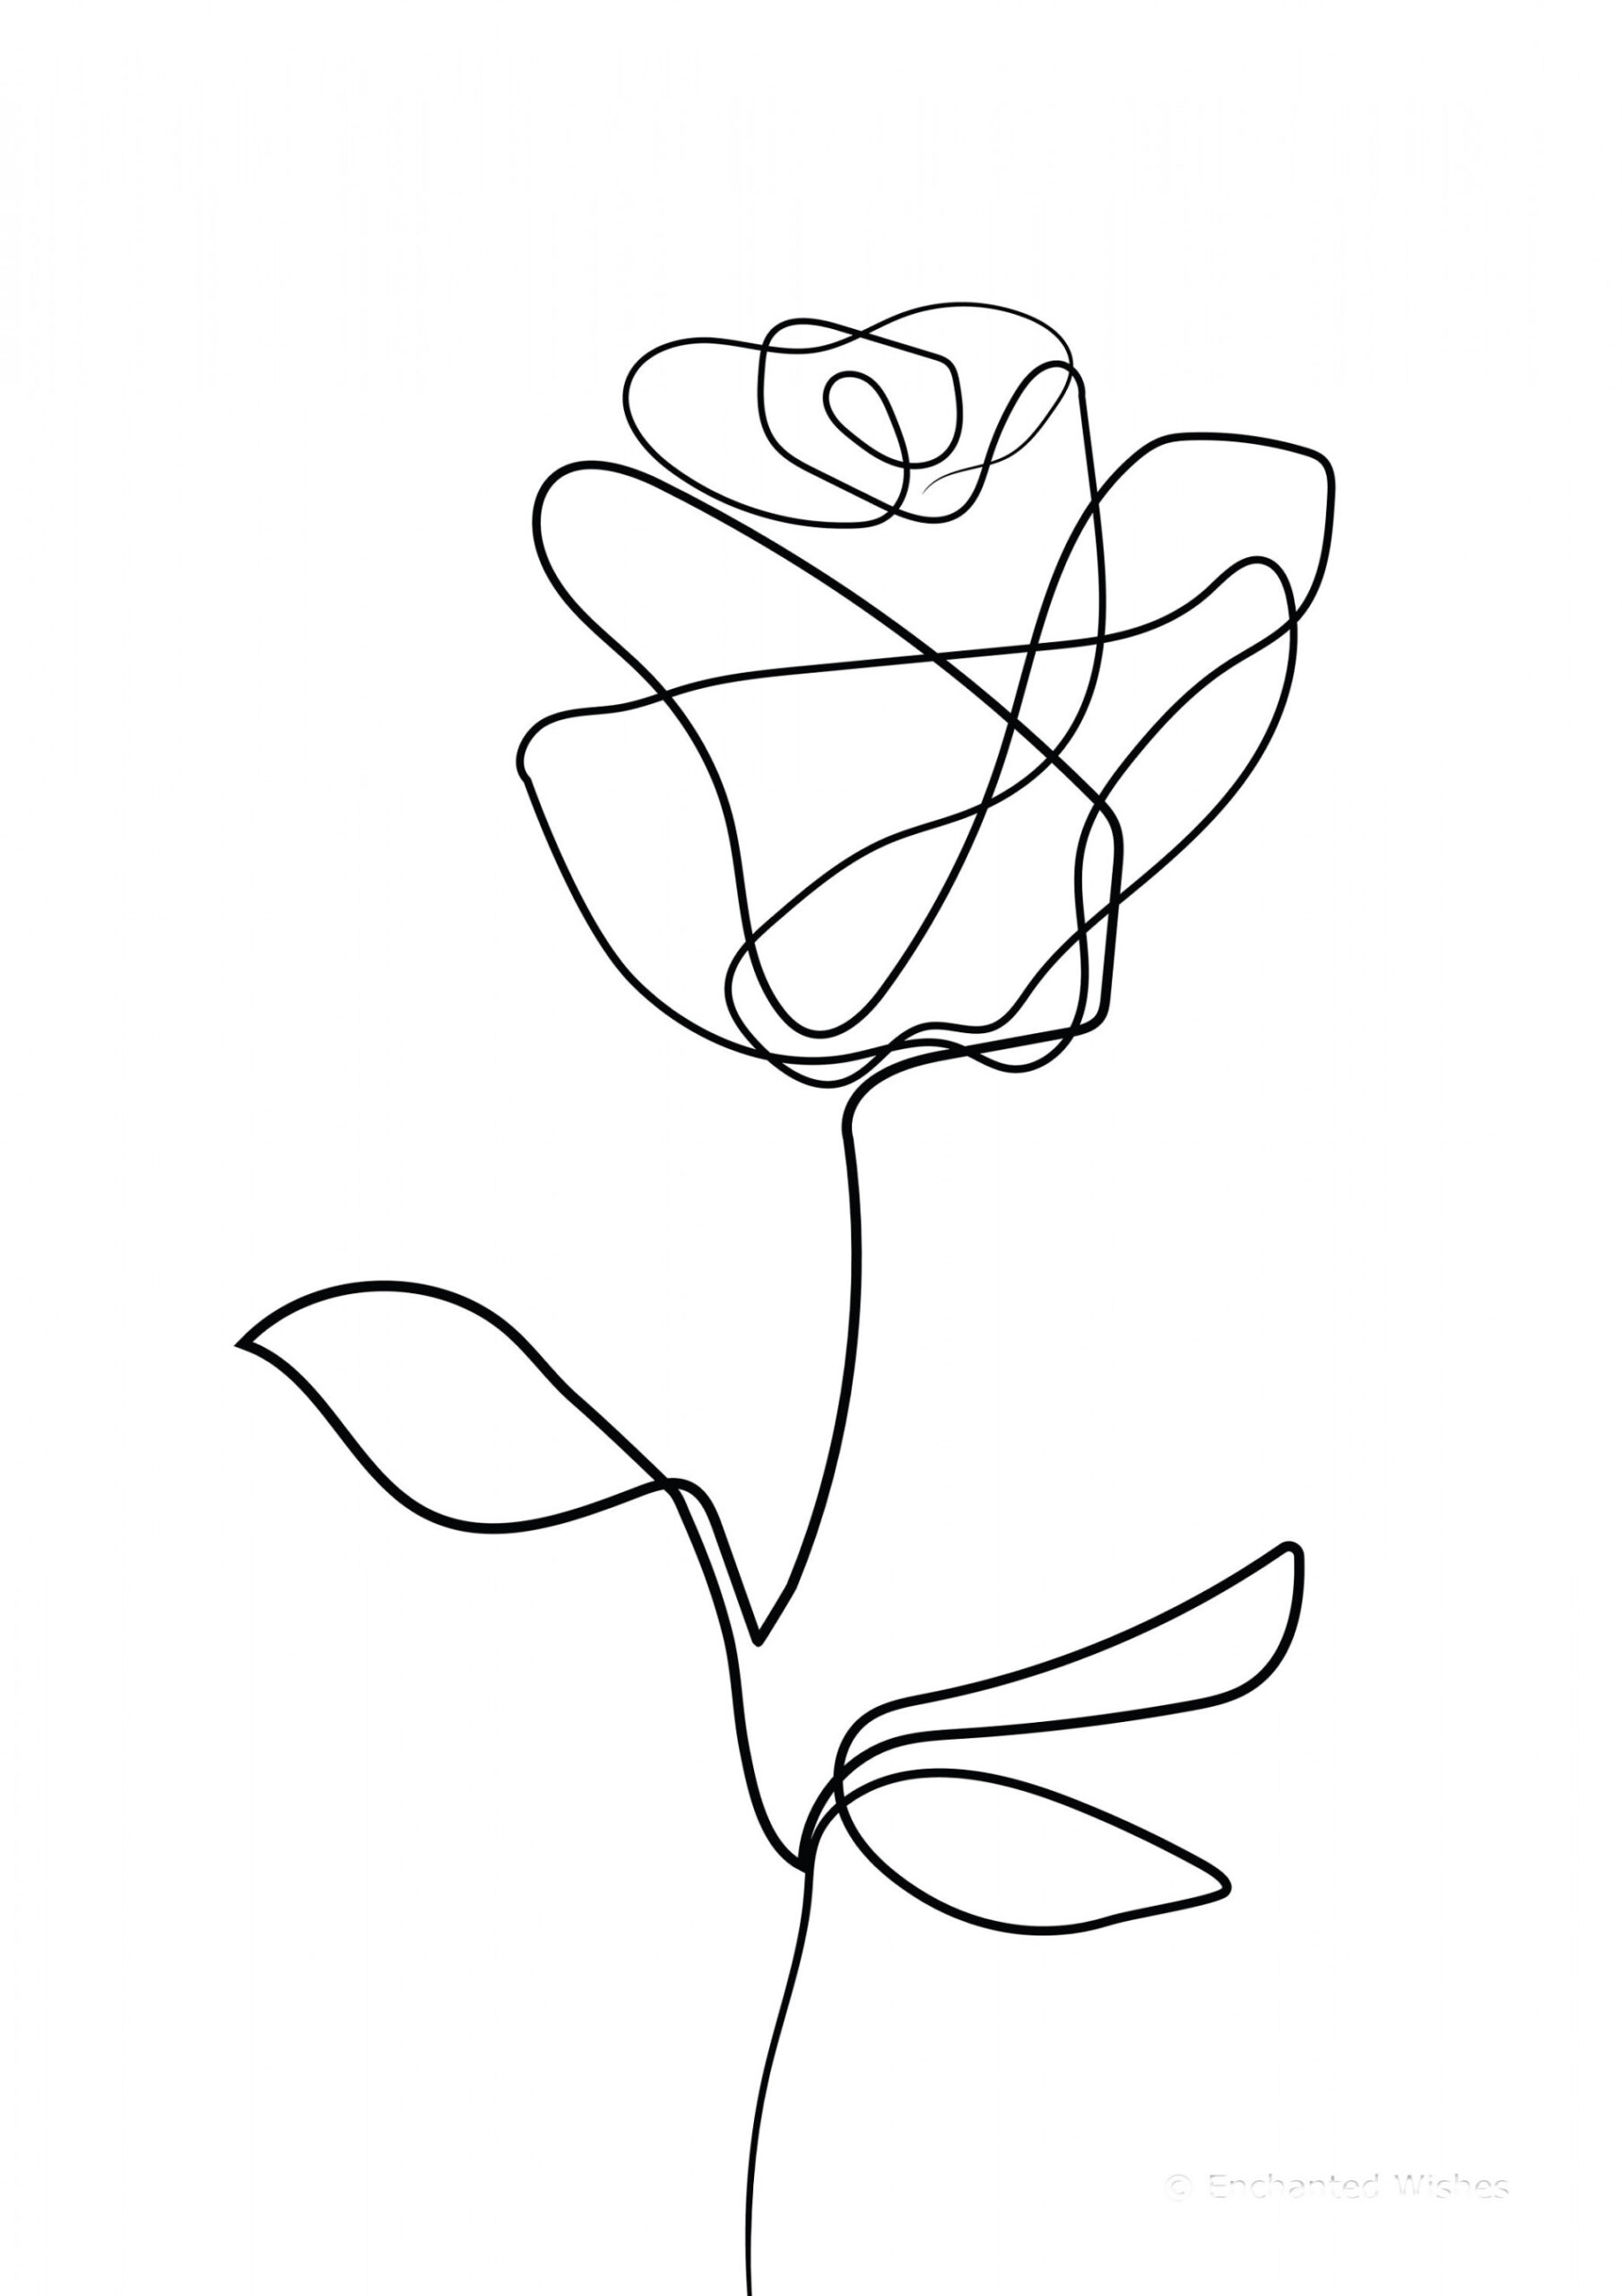 Rose Print, Rose Line Art, Line Drawing, One Line Rose, Floral